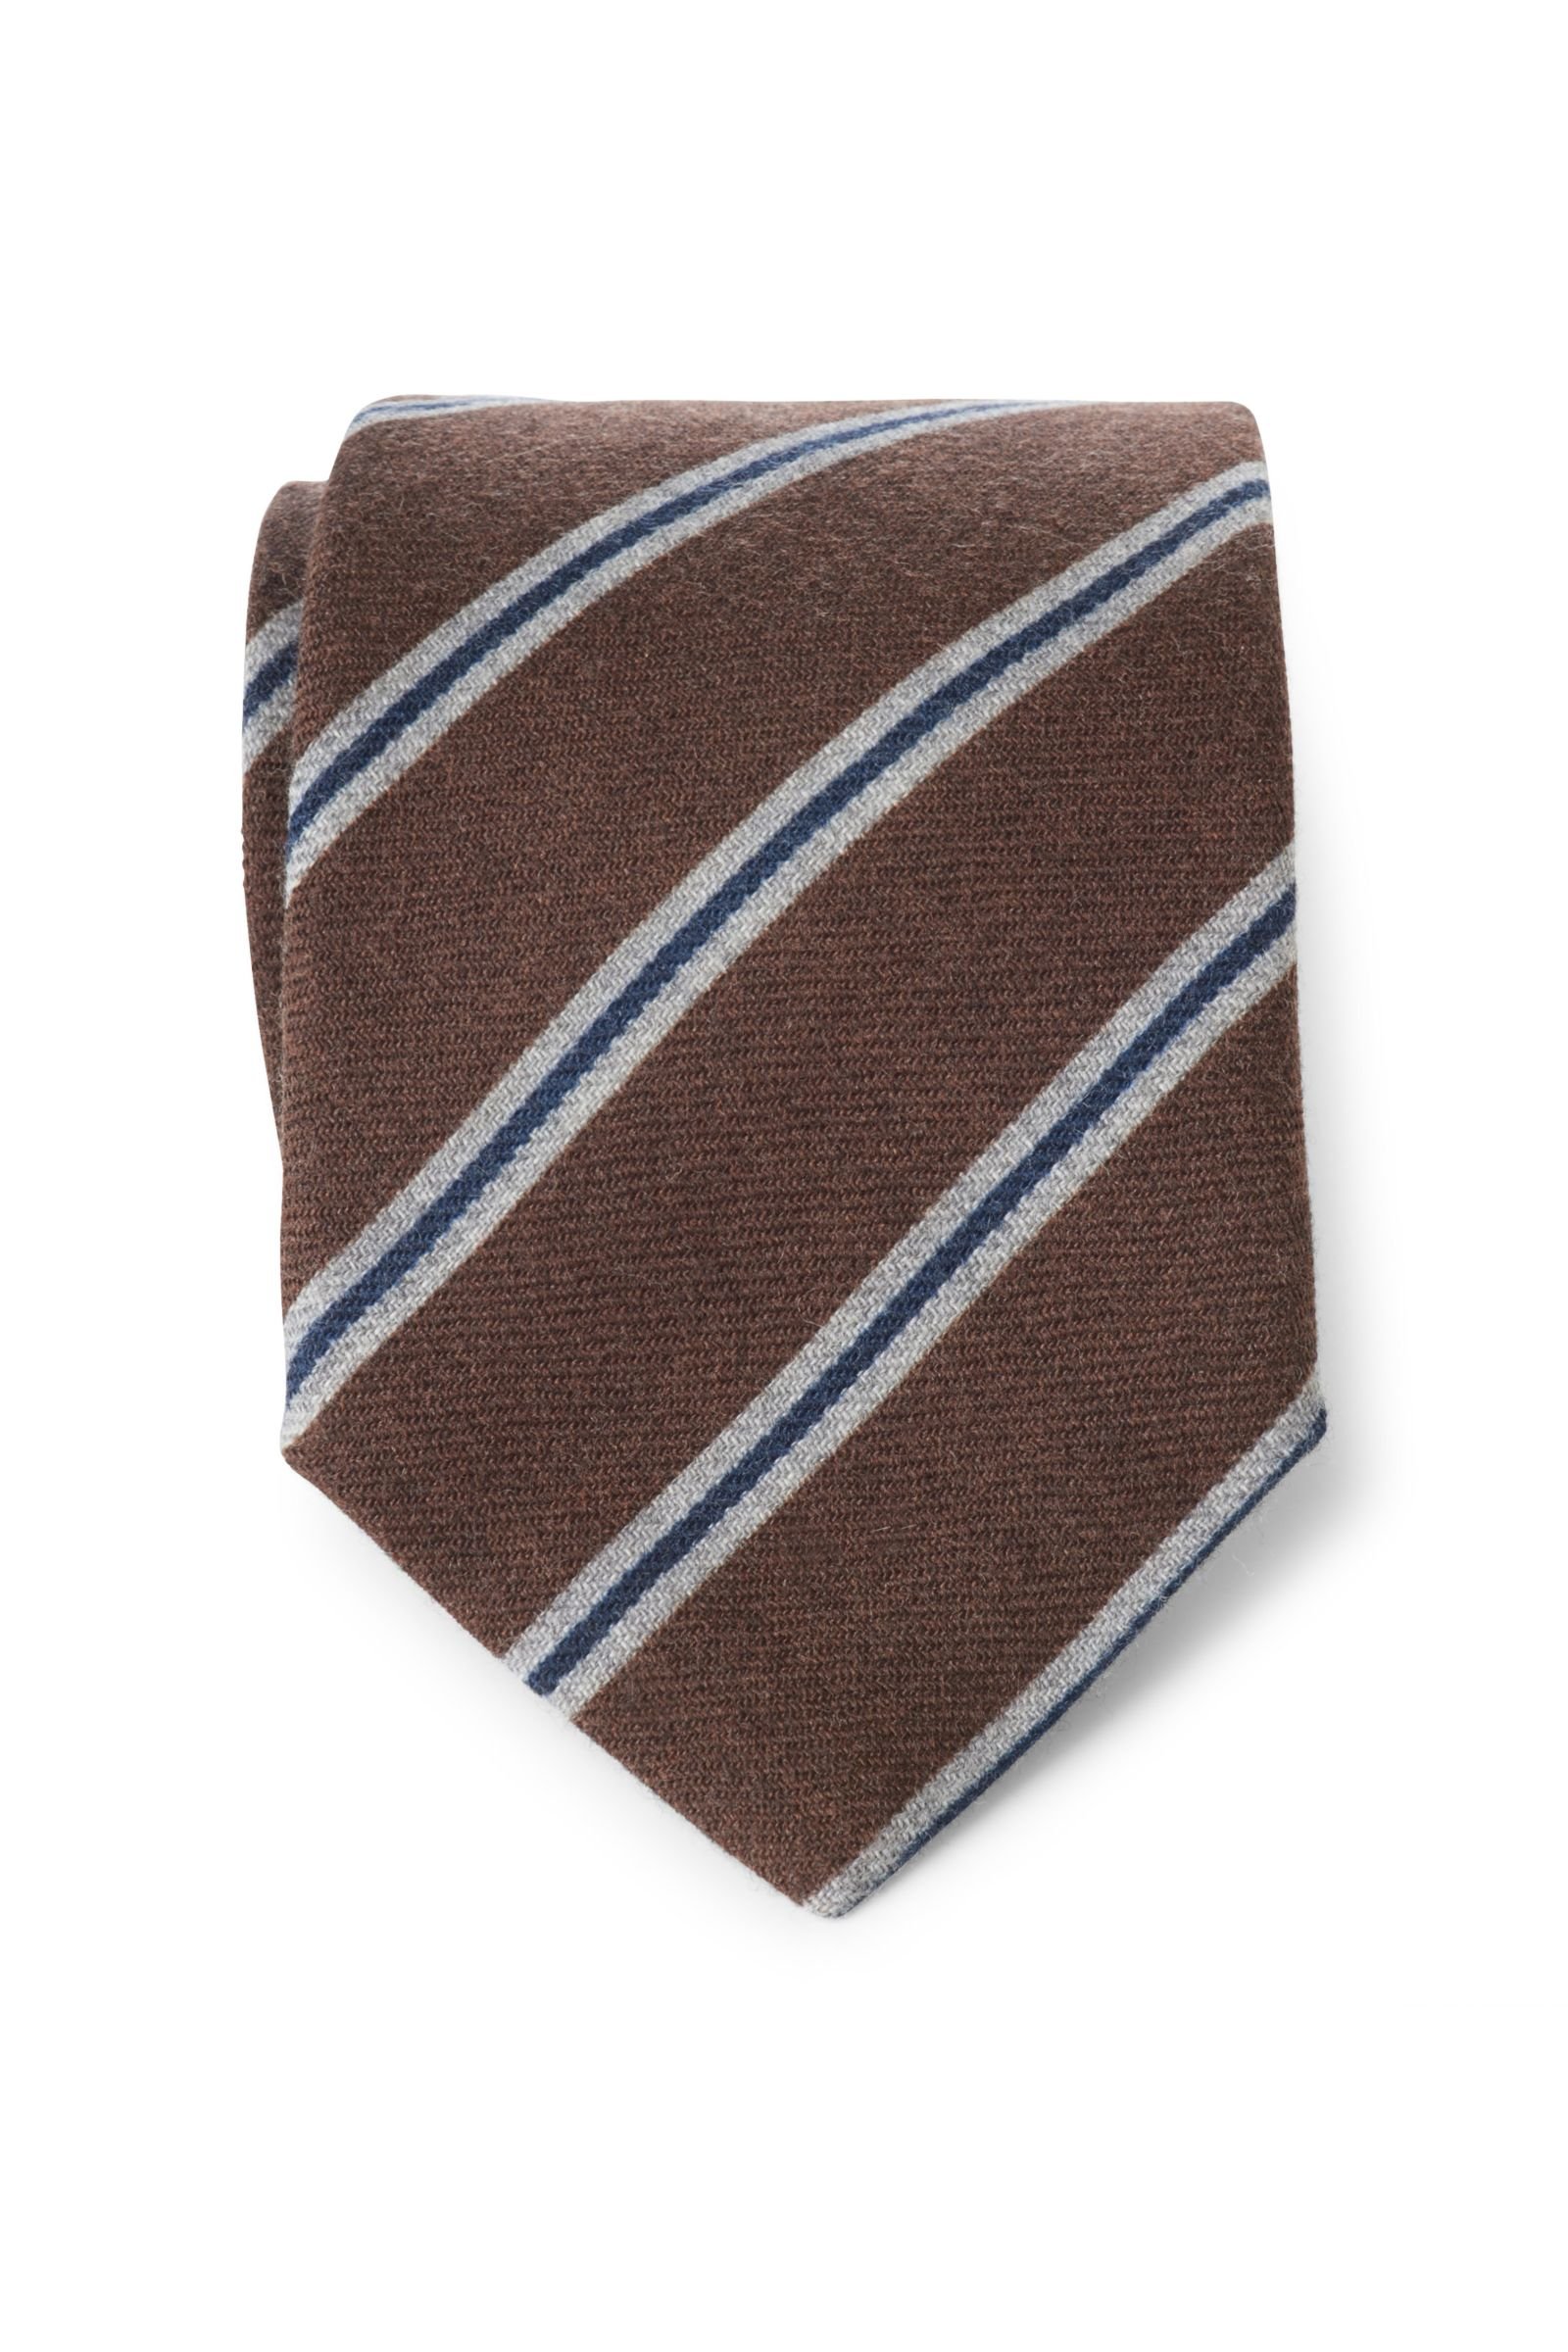 Wool tie brown striped